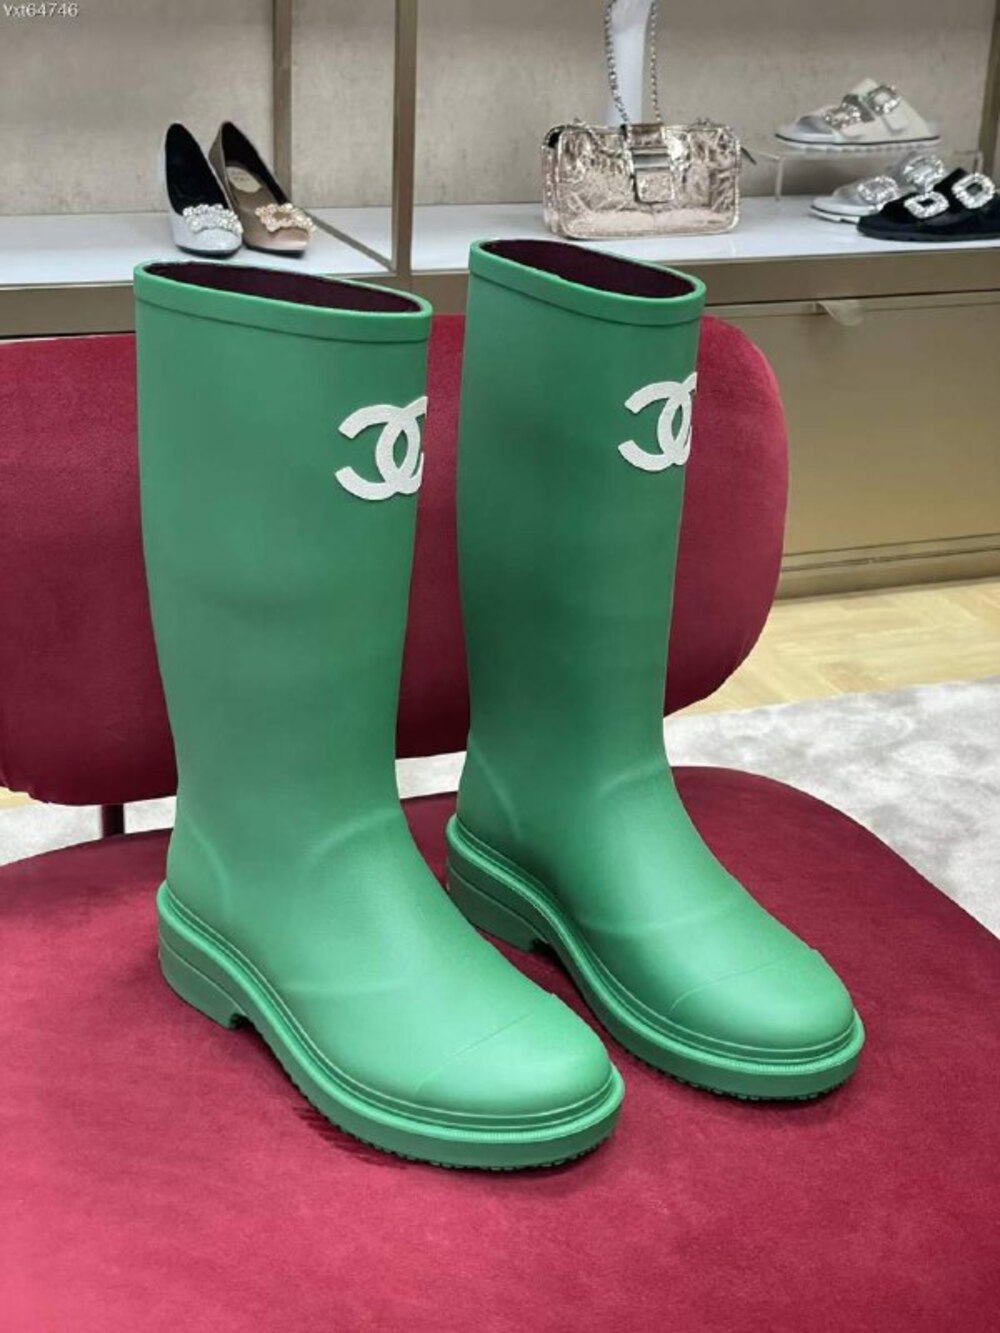 Rubber boots women's green